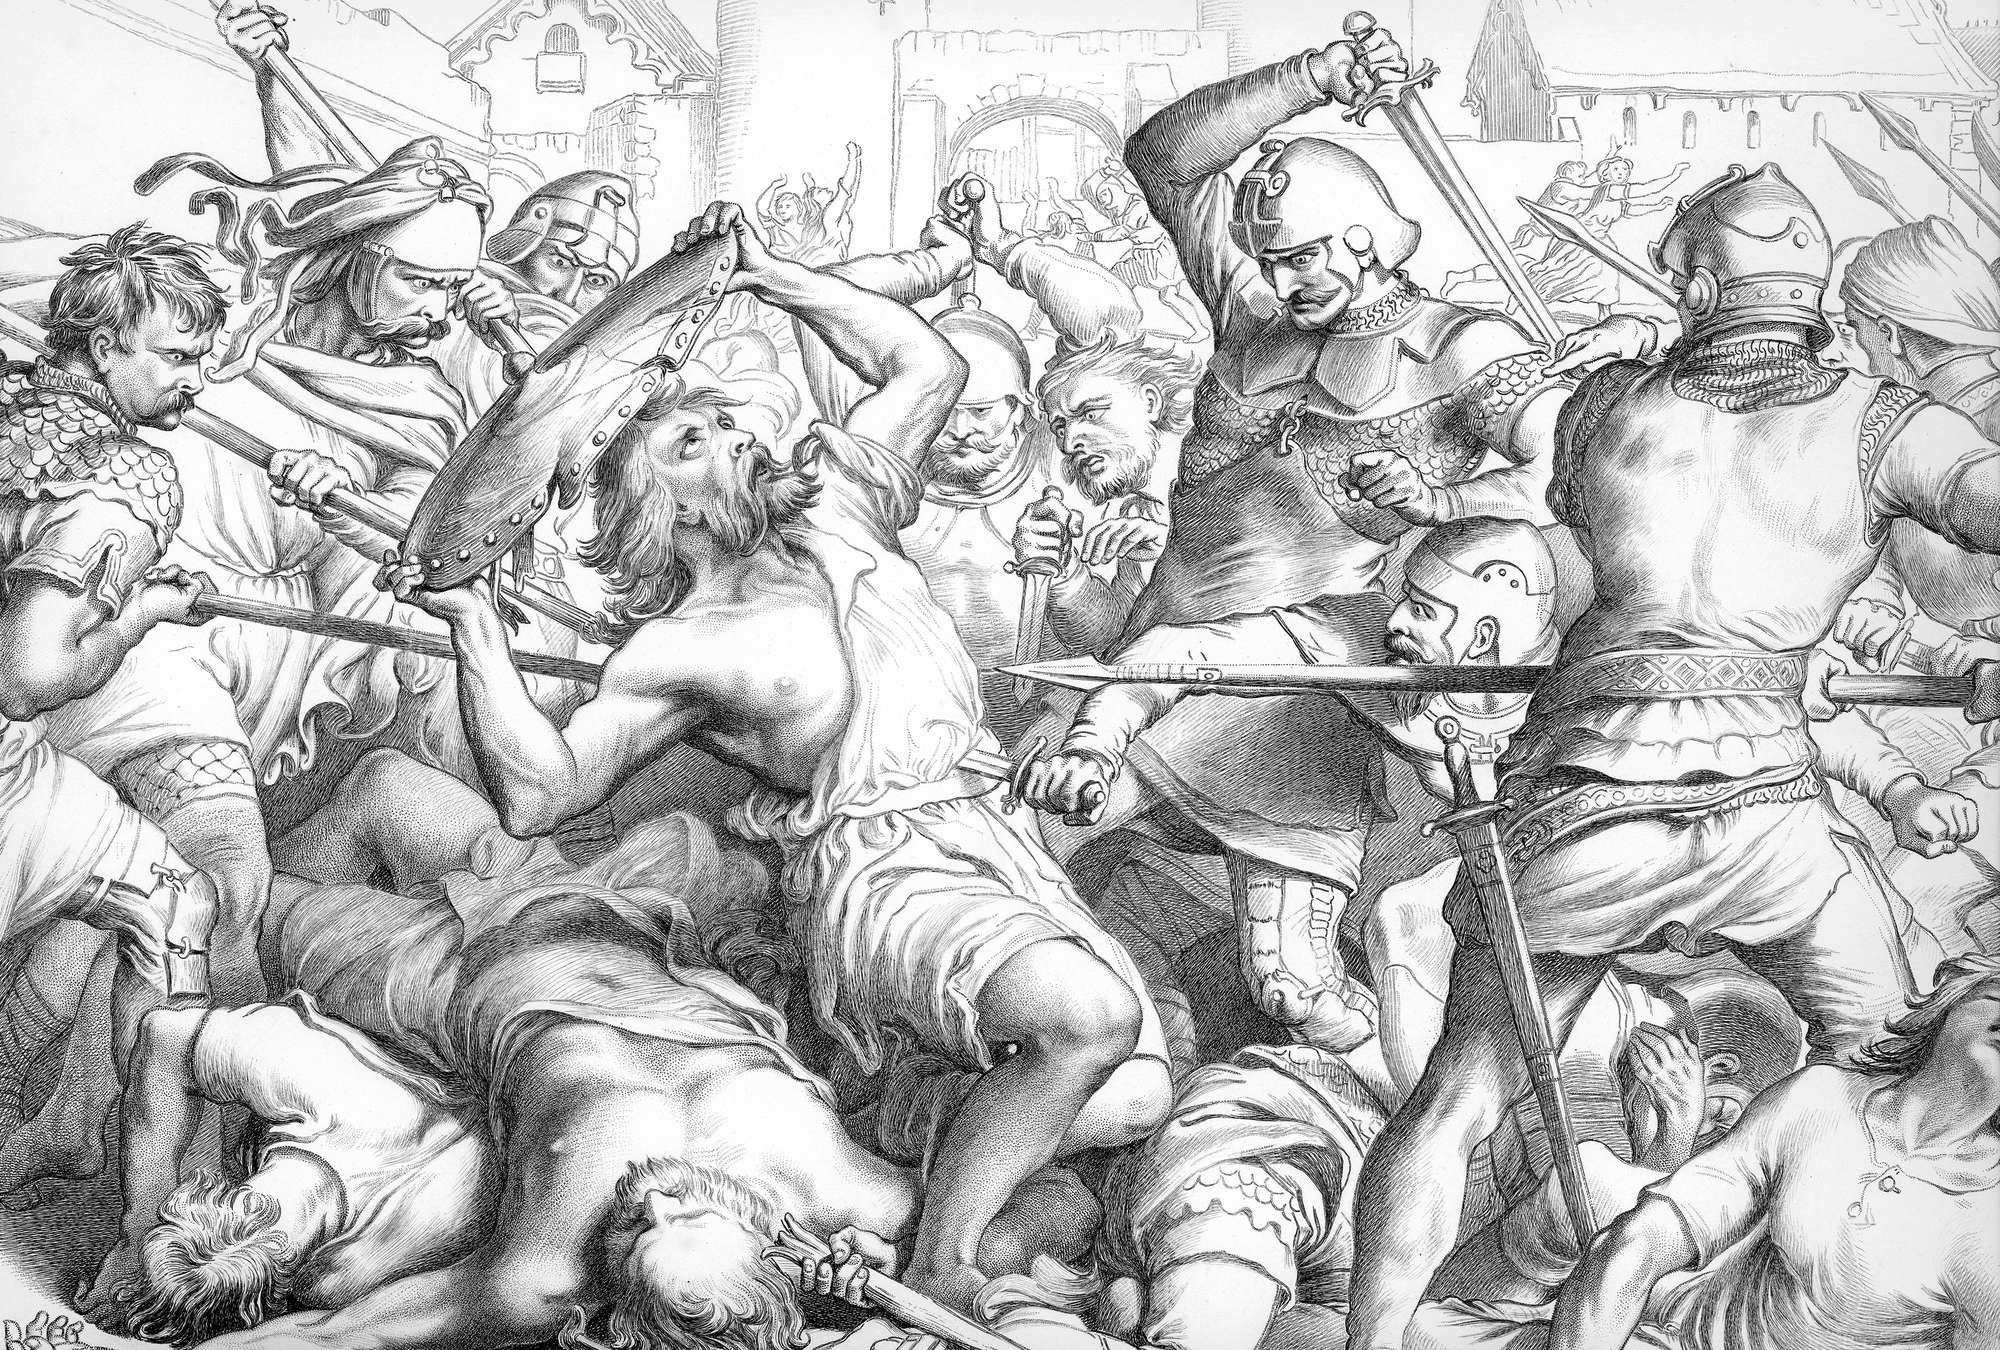             Papier peint œuvre d'art dessin au crayon "Le dernier combat de Hereward the Wake»
        